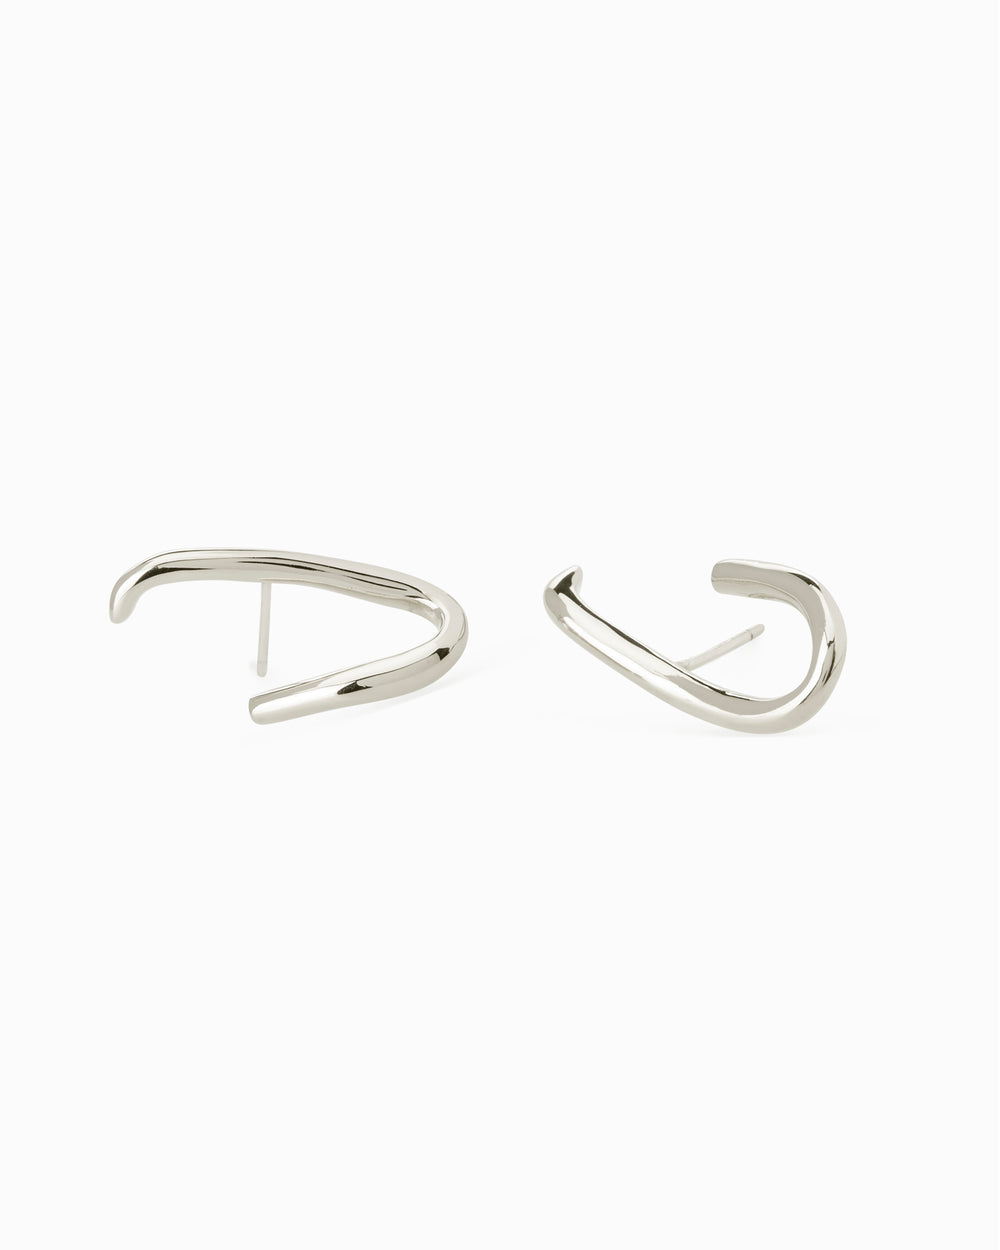 Oval Link Earrings | Silver